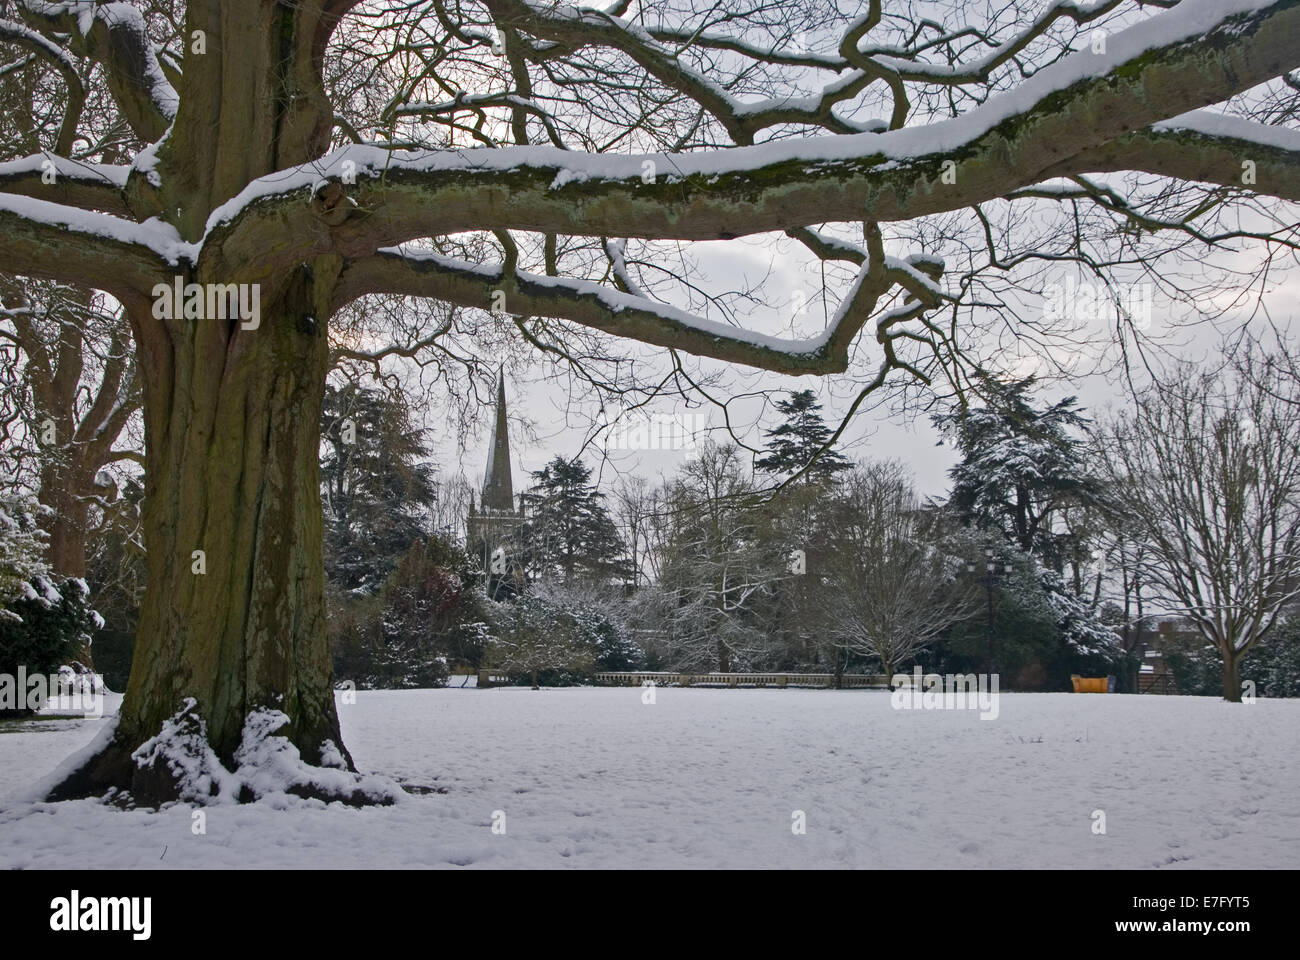 Neige en hiver dans le parc couvre les branches d'arbres, avec la Holy Trinity Church spire, Stratford upon Avon en arrière-plan. Banque D'Images